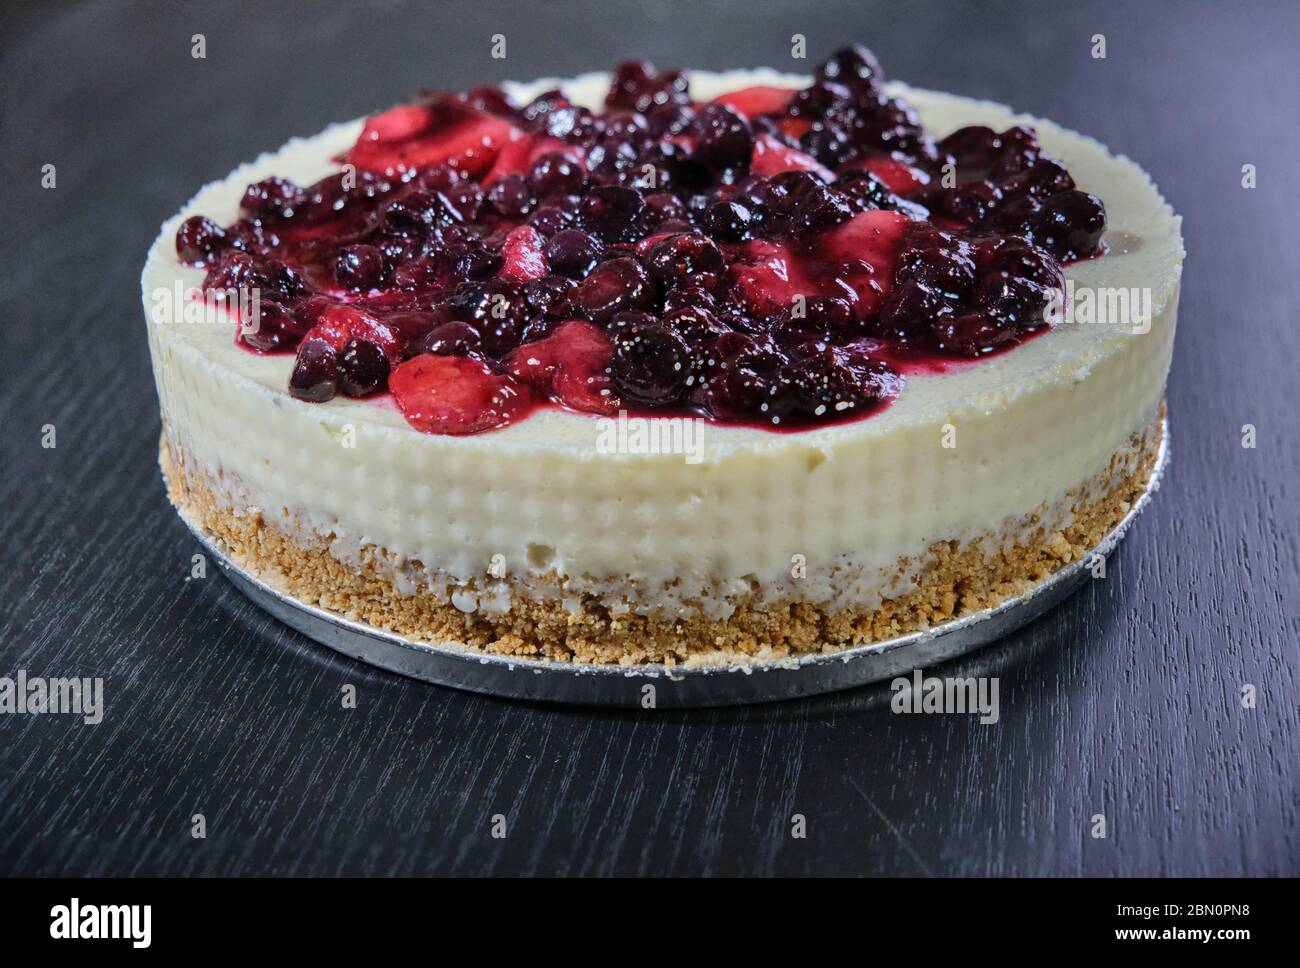 una cheesecake di frutti rossi: fragole, lamponi e mirtilli Foto Stock